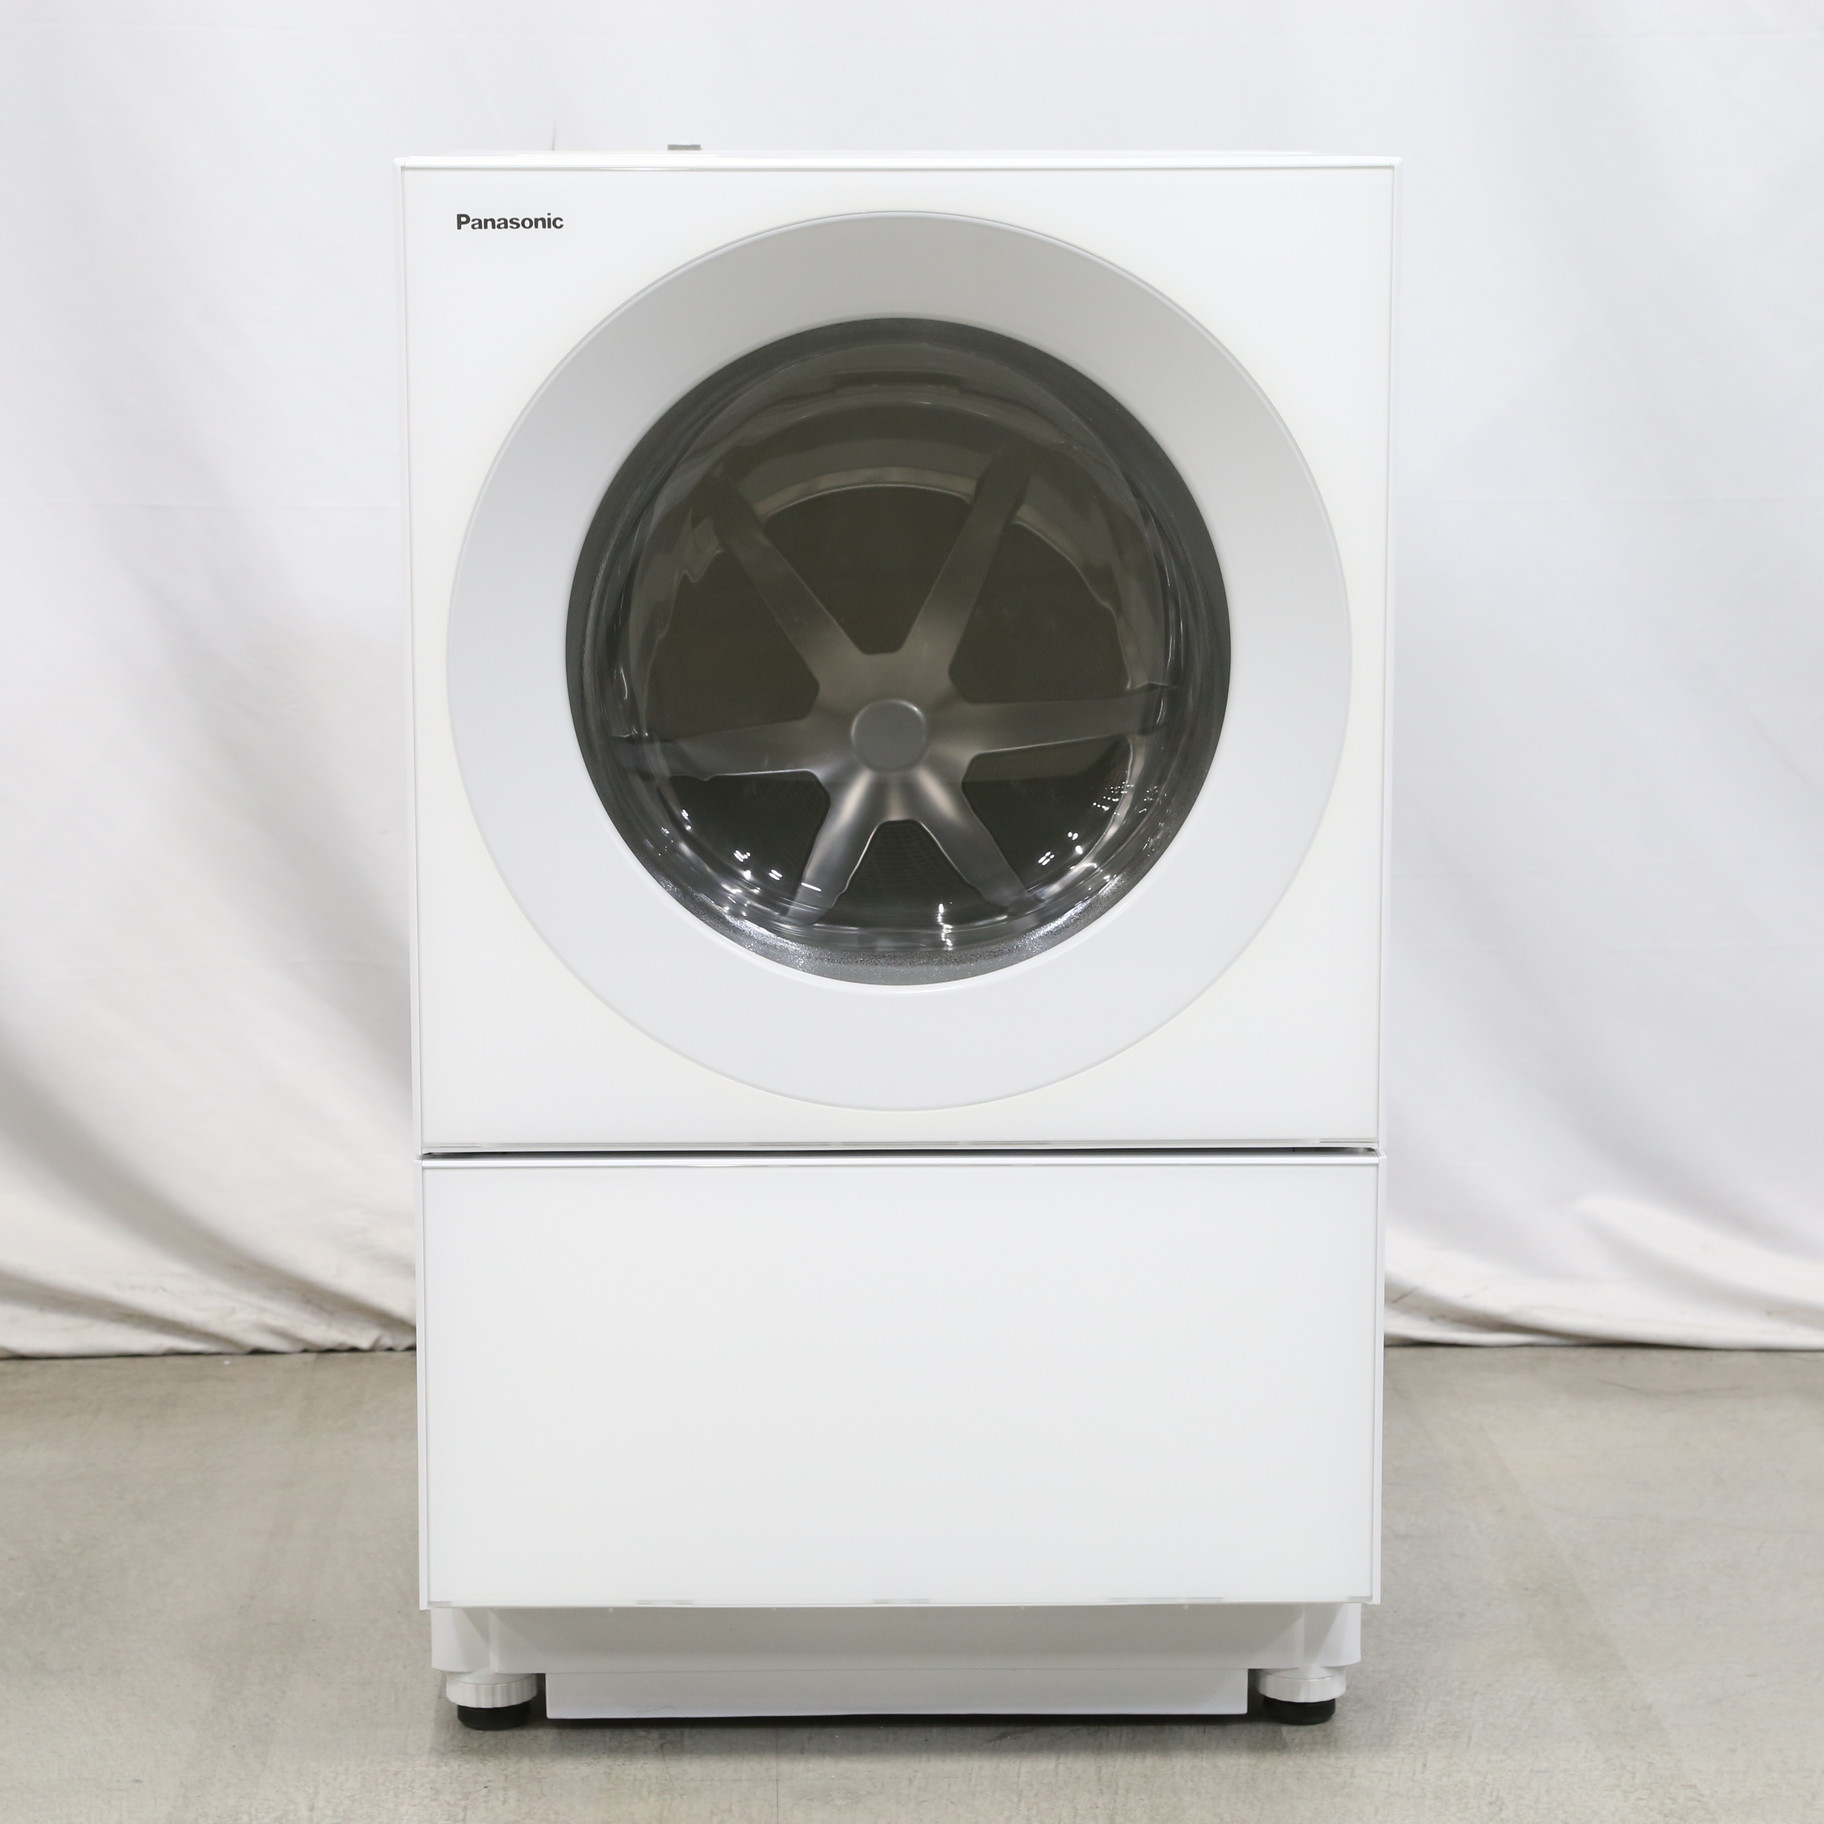 パナソニック 2021年式ななめドラム洗濯乾燥機 NA-VG2500L キューブ 